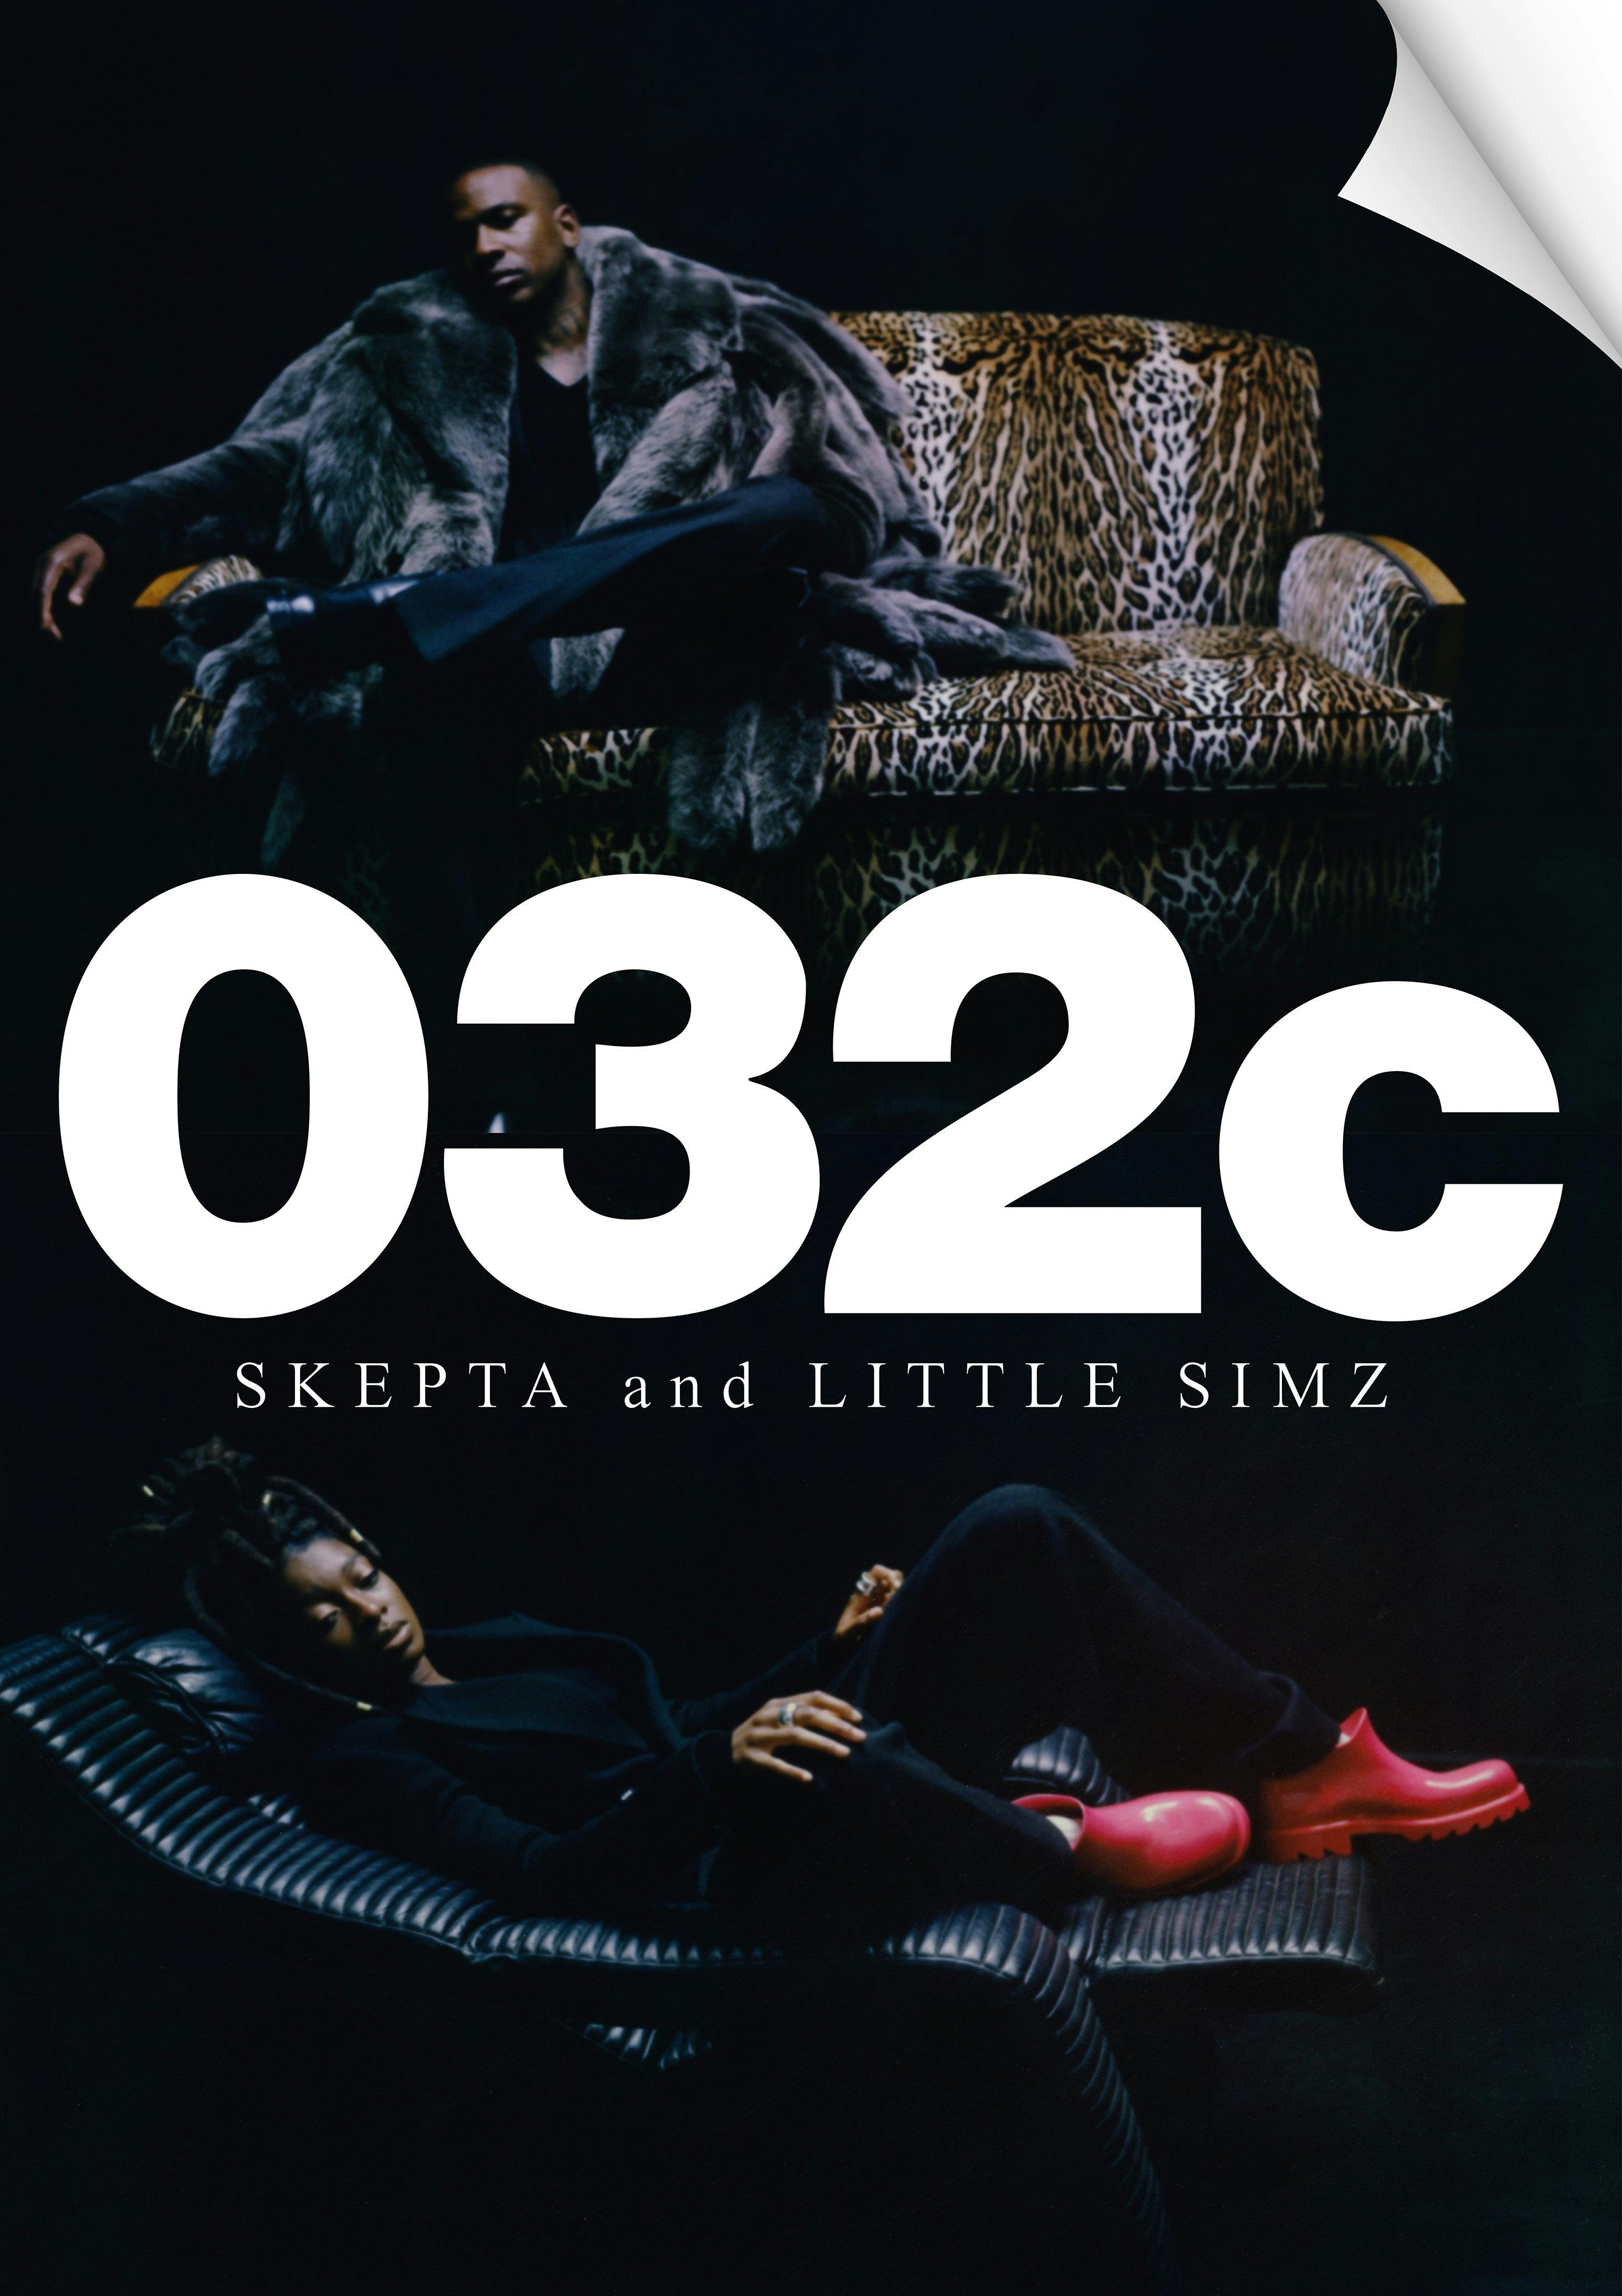 032c Winter 2021/2022 Poster - Skepta & Little Simz - Poster_40th_Cover_Ear2_7c031a45-fc4a-4b59-ae4e-7e280e614f4c